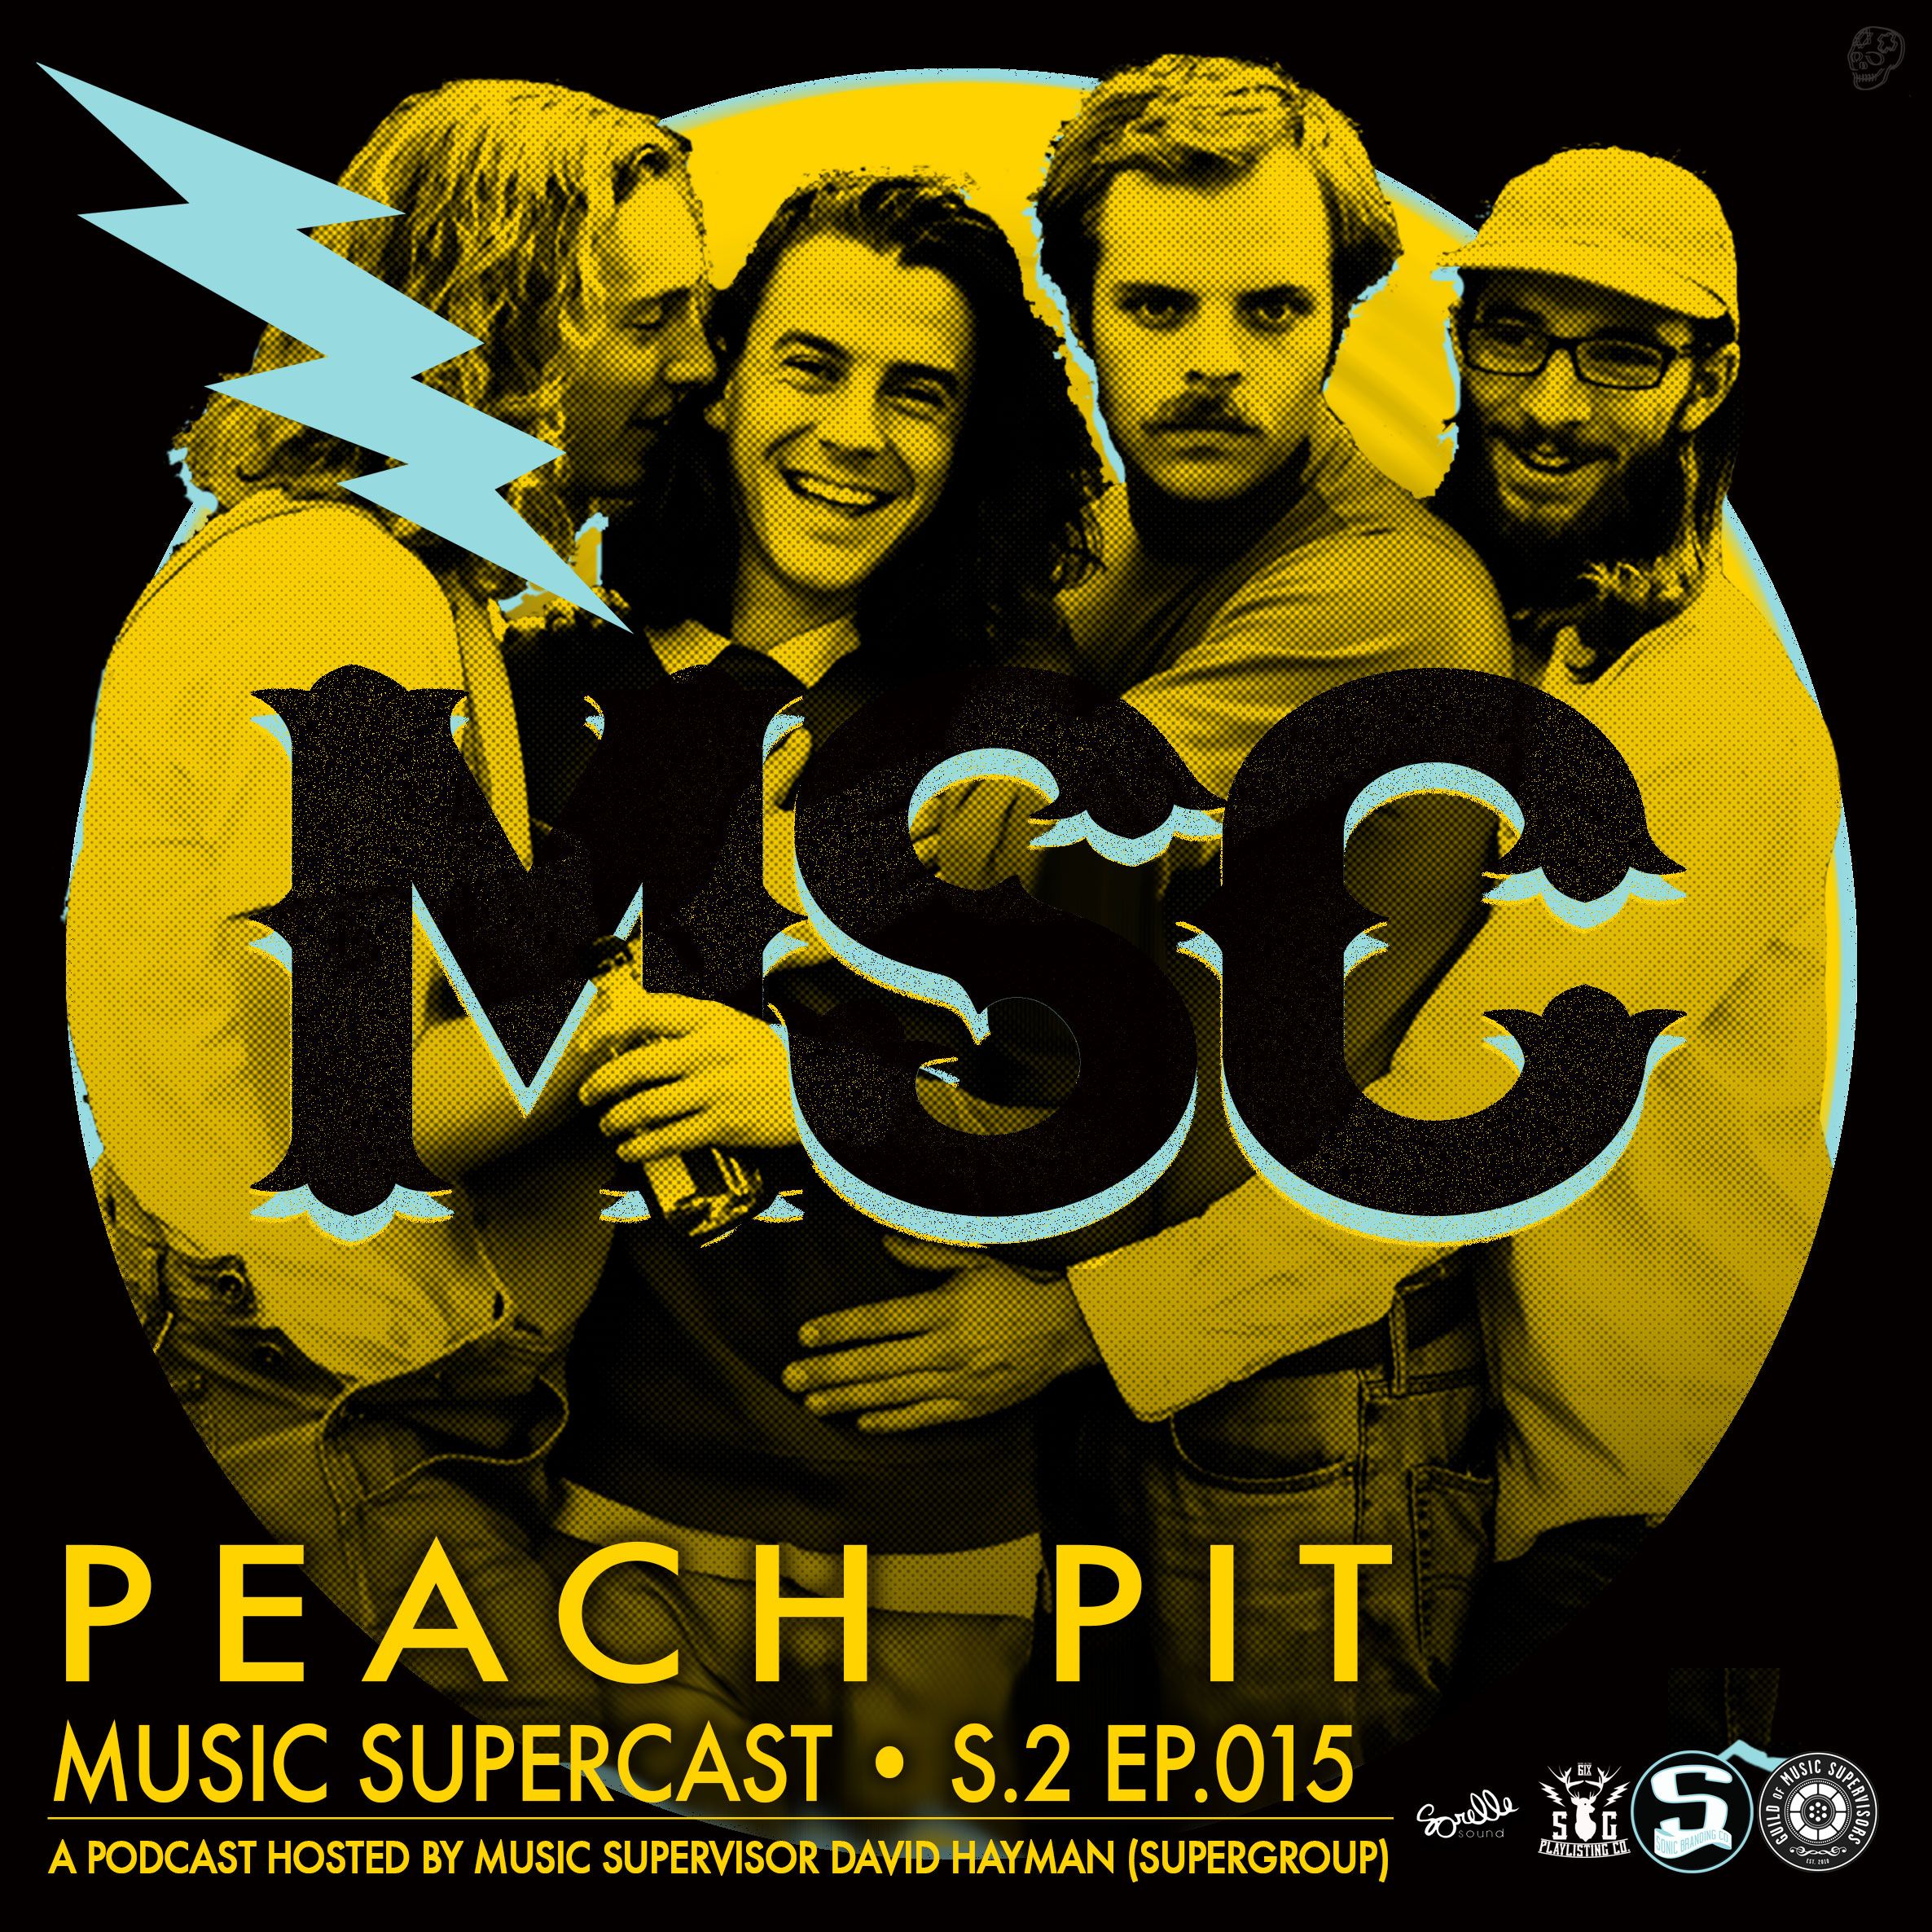 - PEACH PIT https://soundcloud.com/musicsupercast/msc-2015-peach-pit/s-u3Nw...